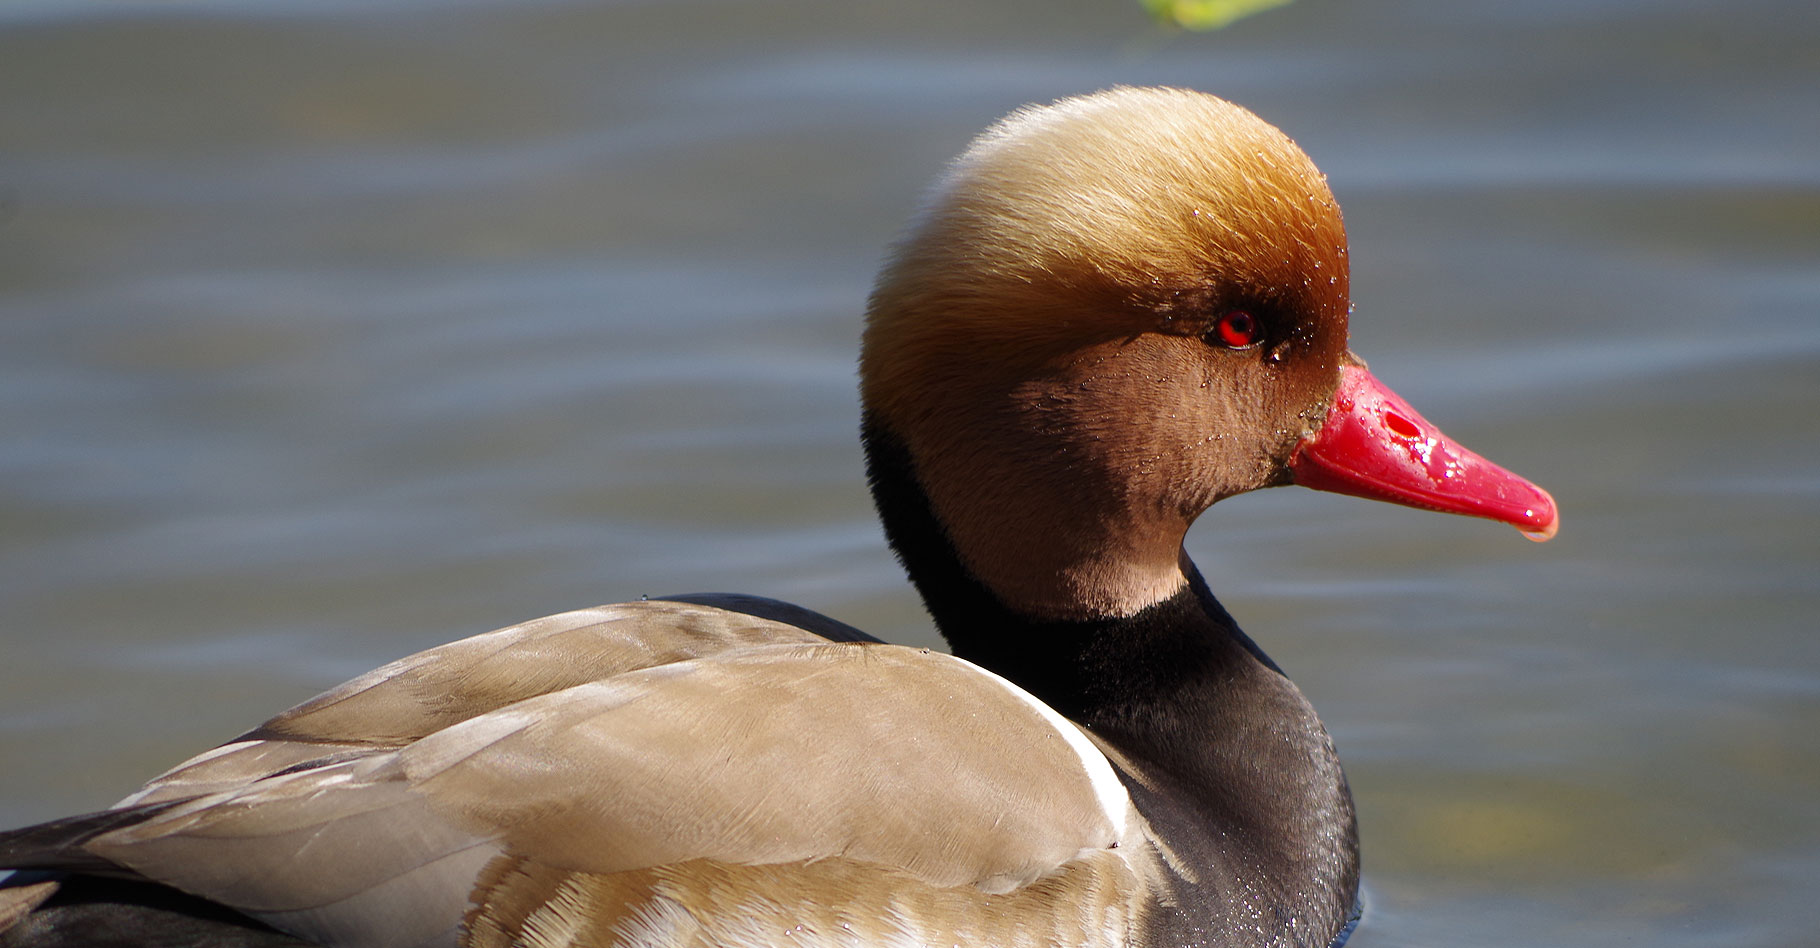 Canard sur les étangs de la Dombes. © Isabelle Barruhet, Flickr, CC by-nc 2.0